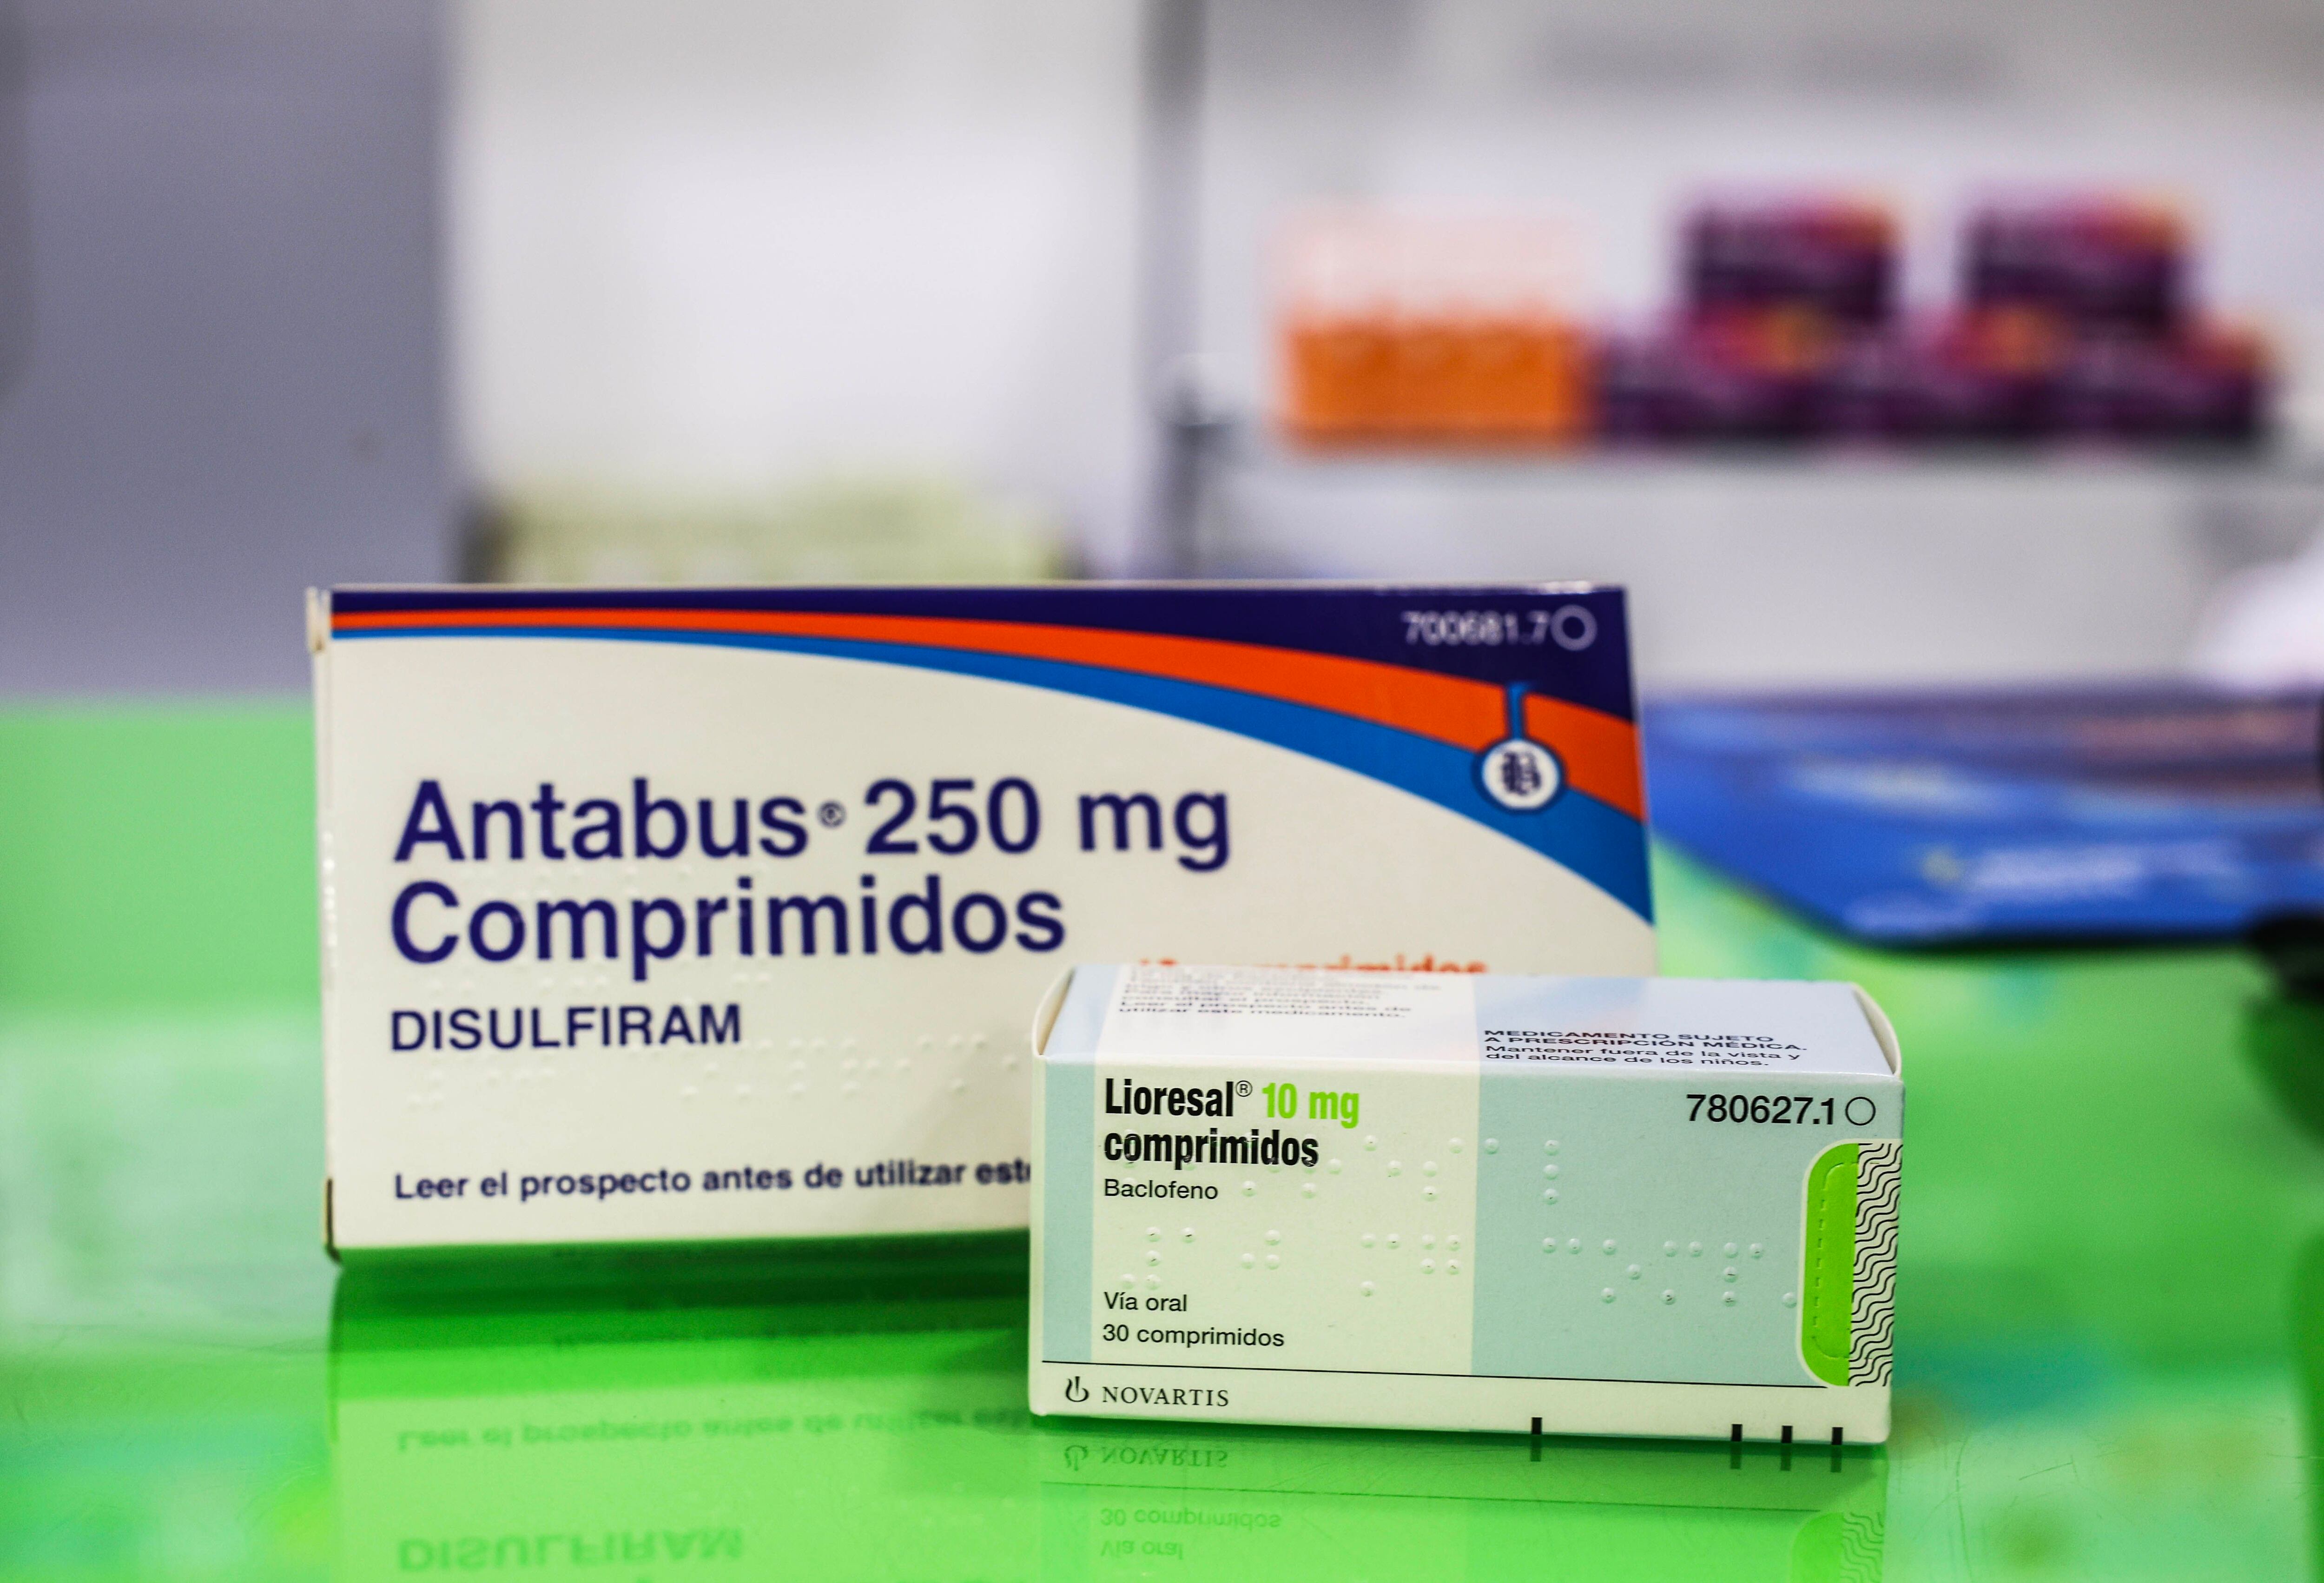 Cajas de dos medicamentos utilizados para dejar de beber, Antabus y Lioresal, en una farmacia de Madrid.